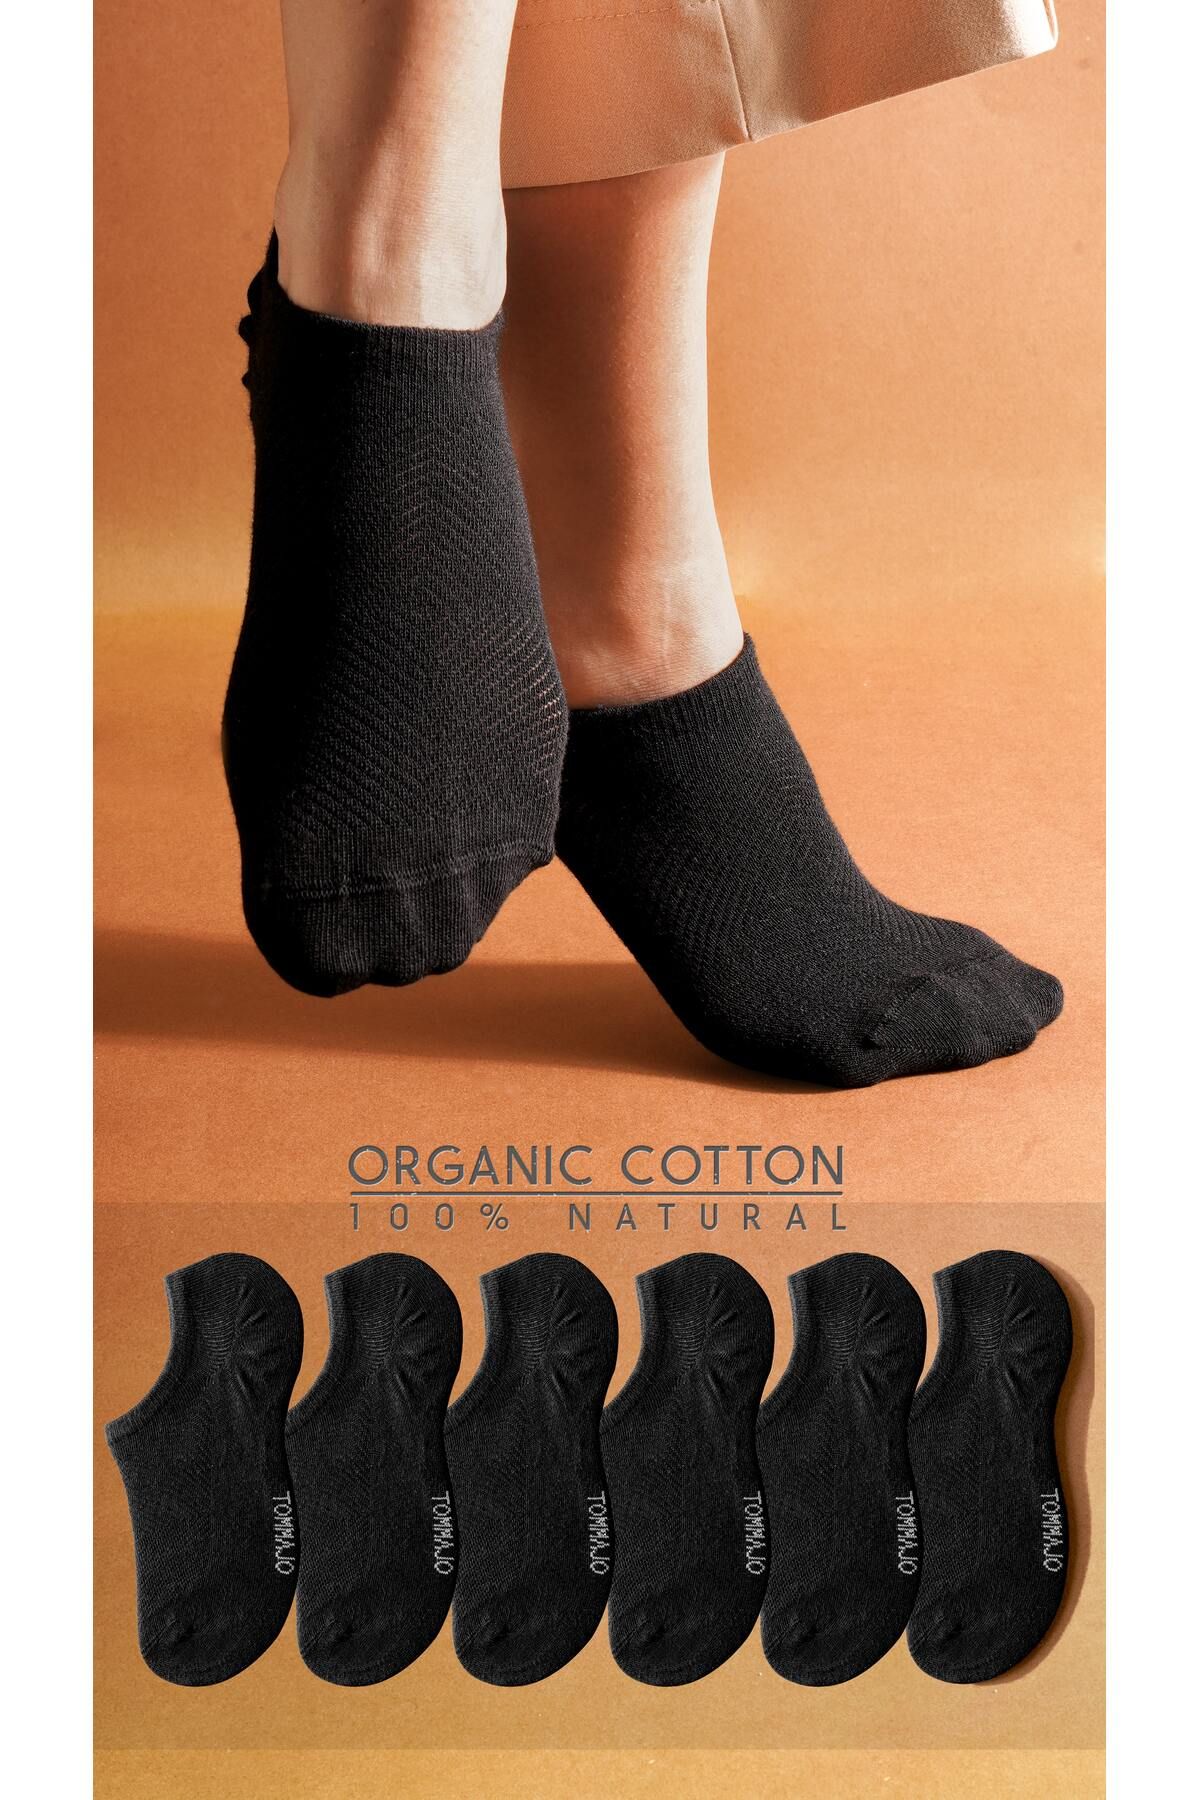 TOMMAJO 6 Çift Siyah Kadın Sneaker / Spor Ayakkabıdan Görünmez Kısa Patik Çorap / Yaz Koleksiyonu